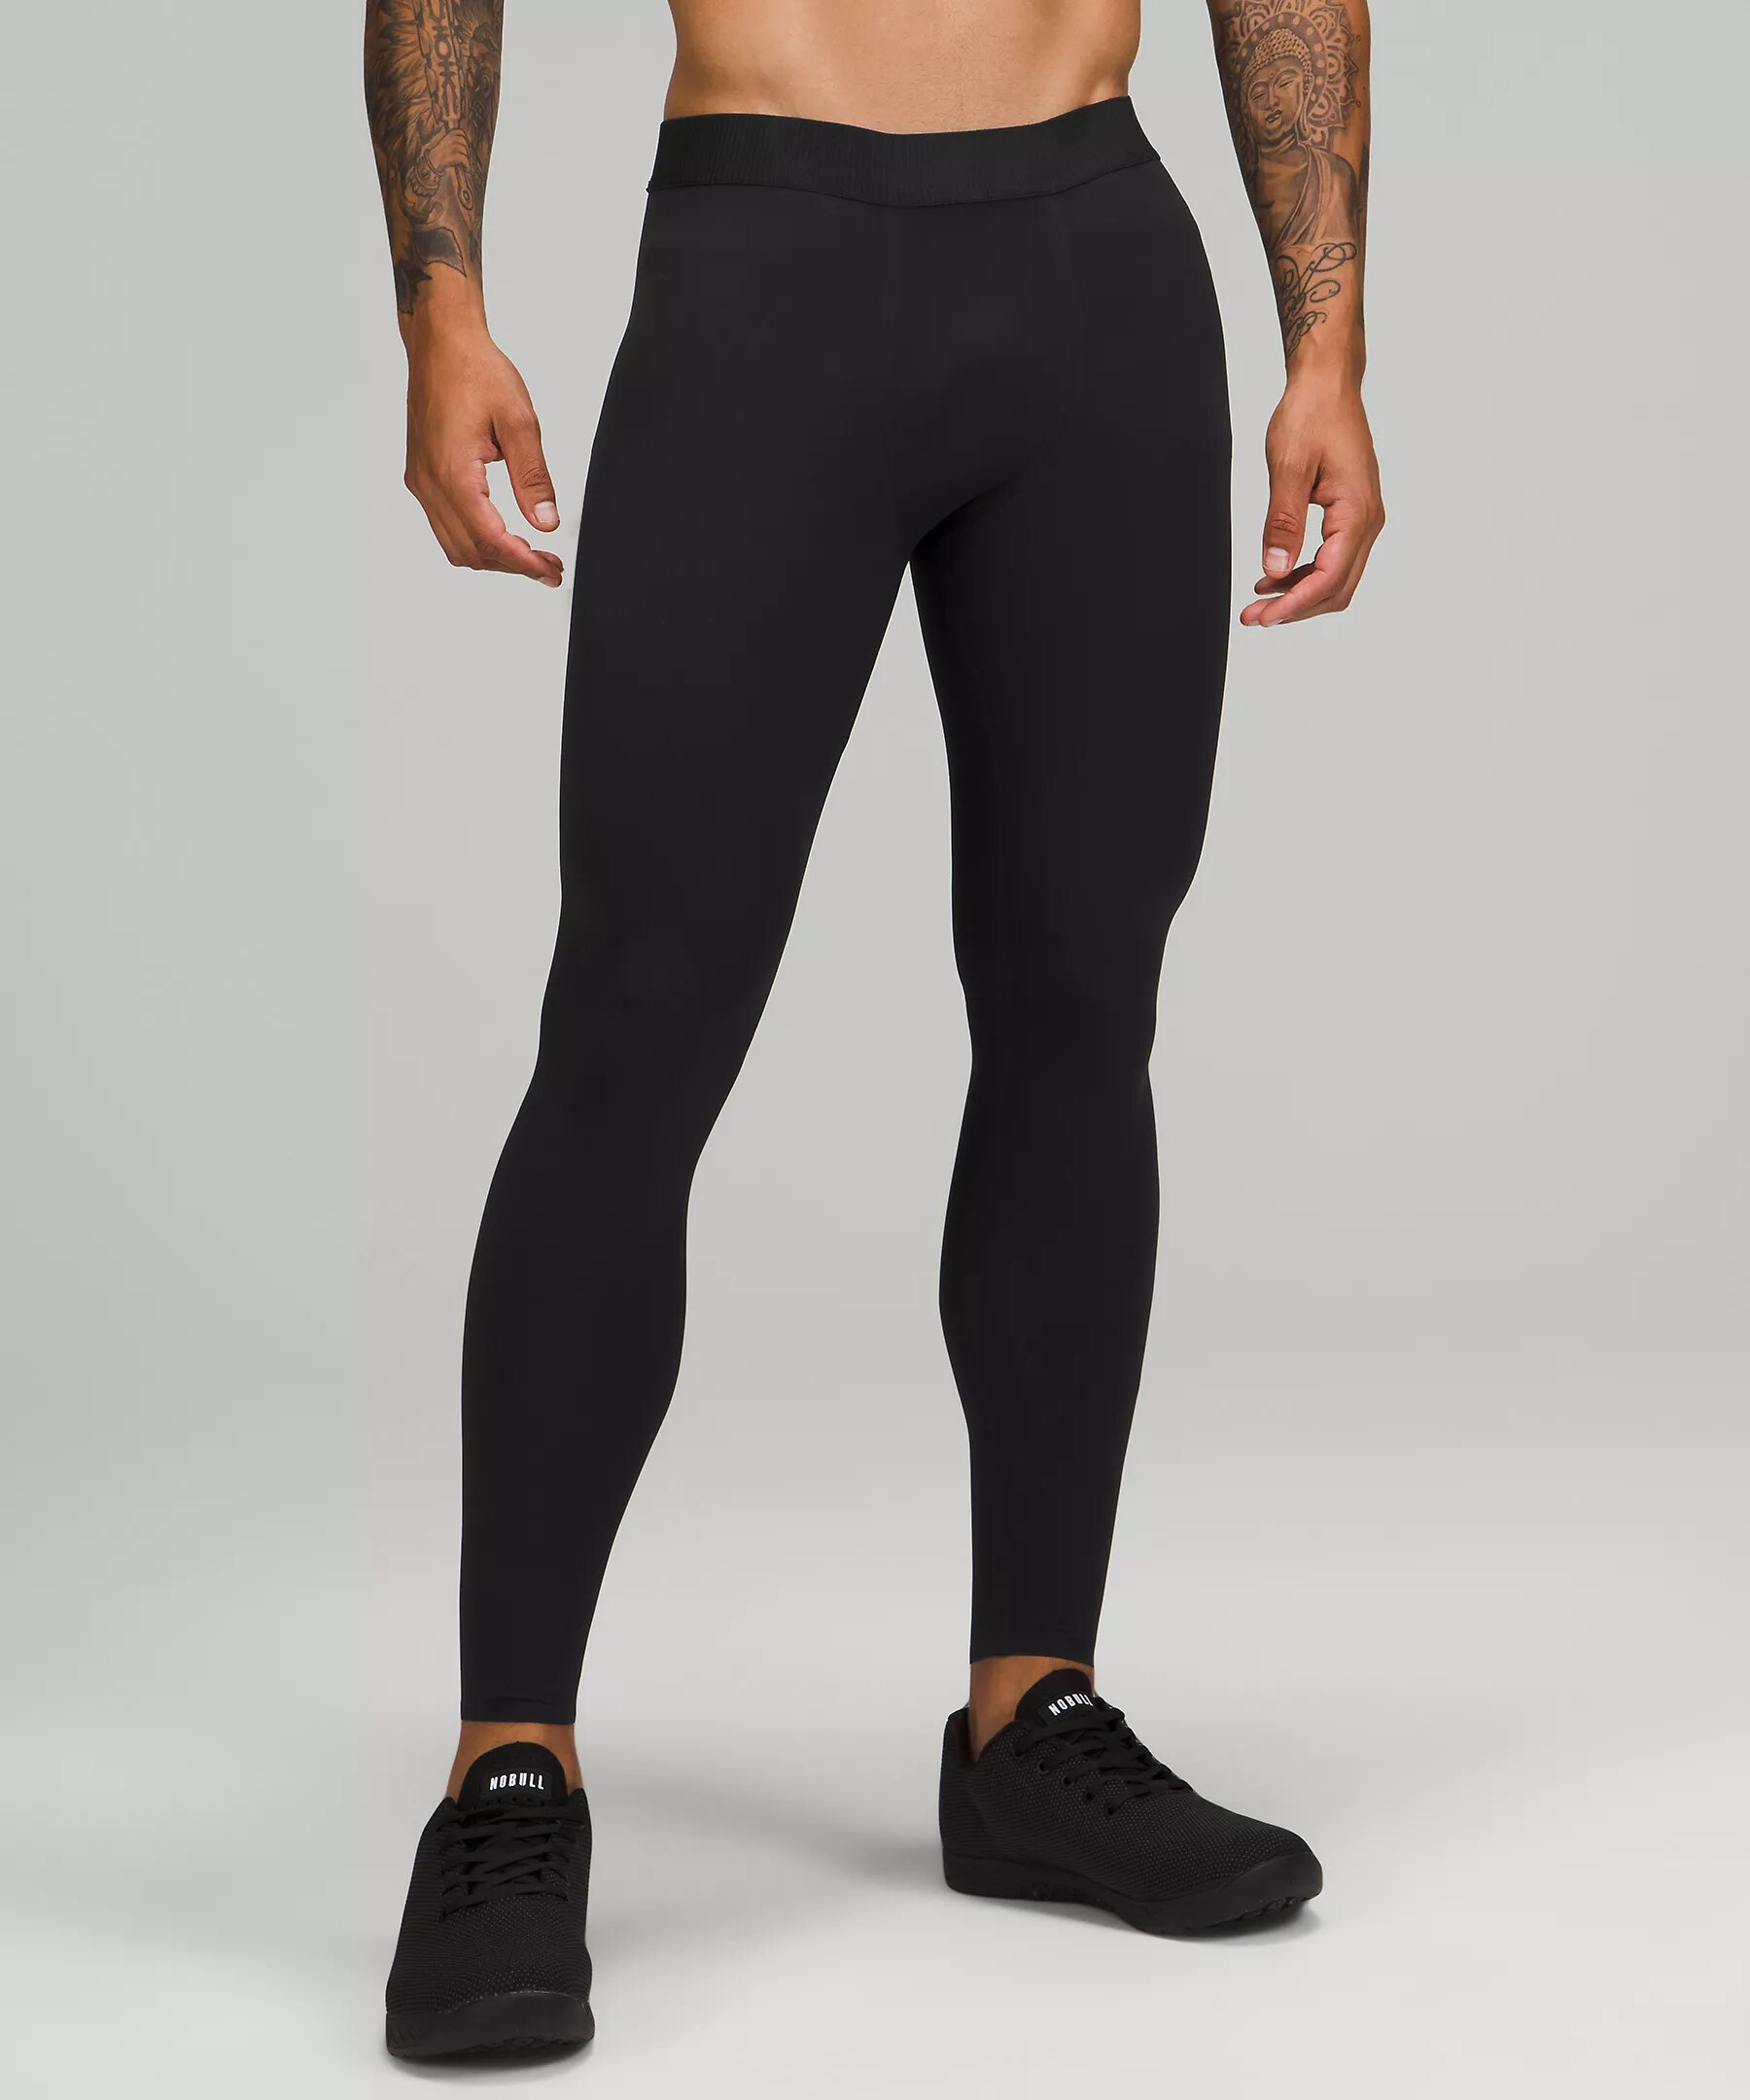 men's tight running pants supplier